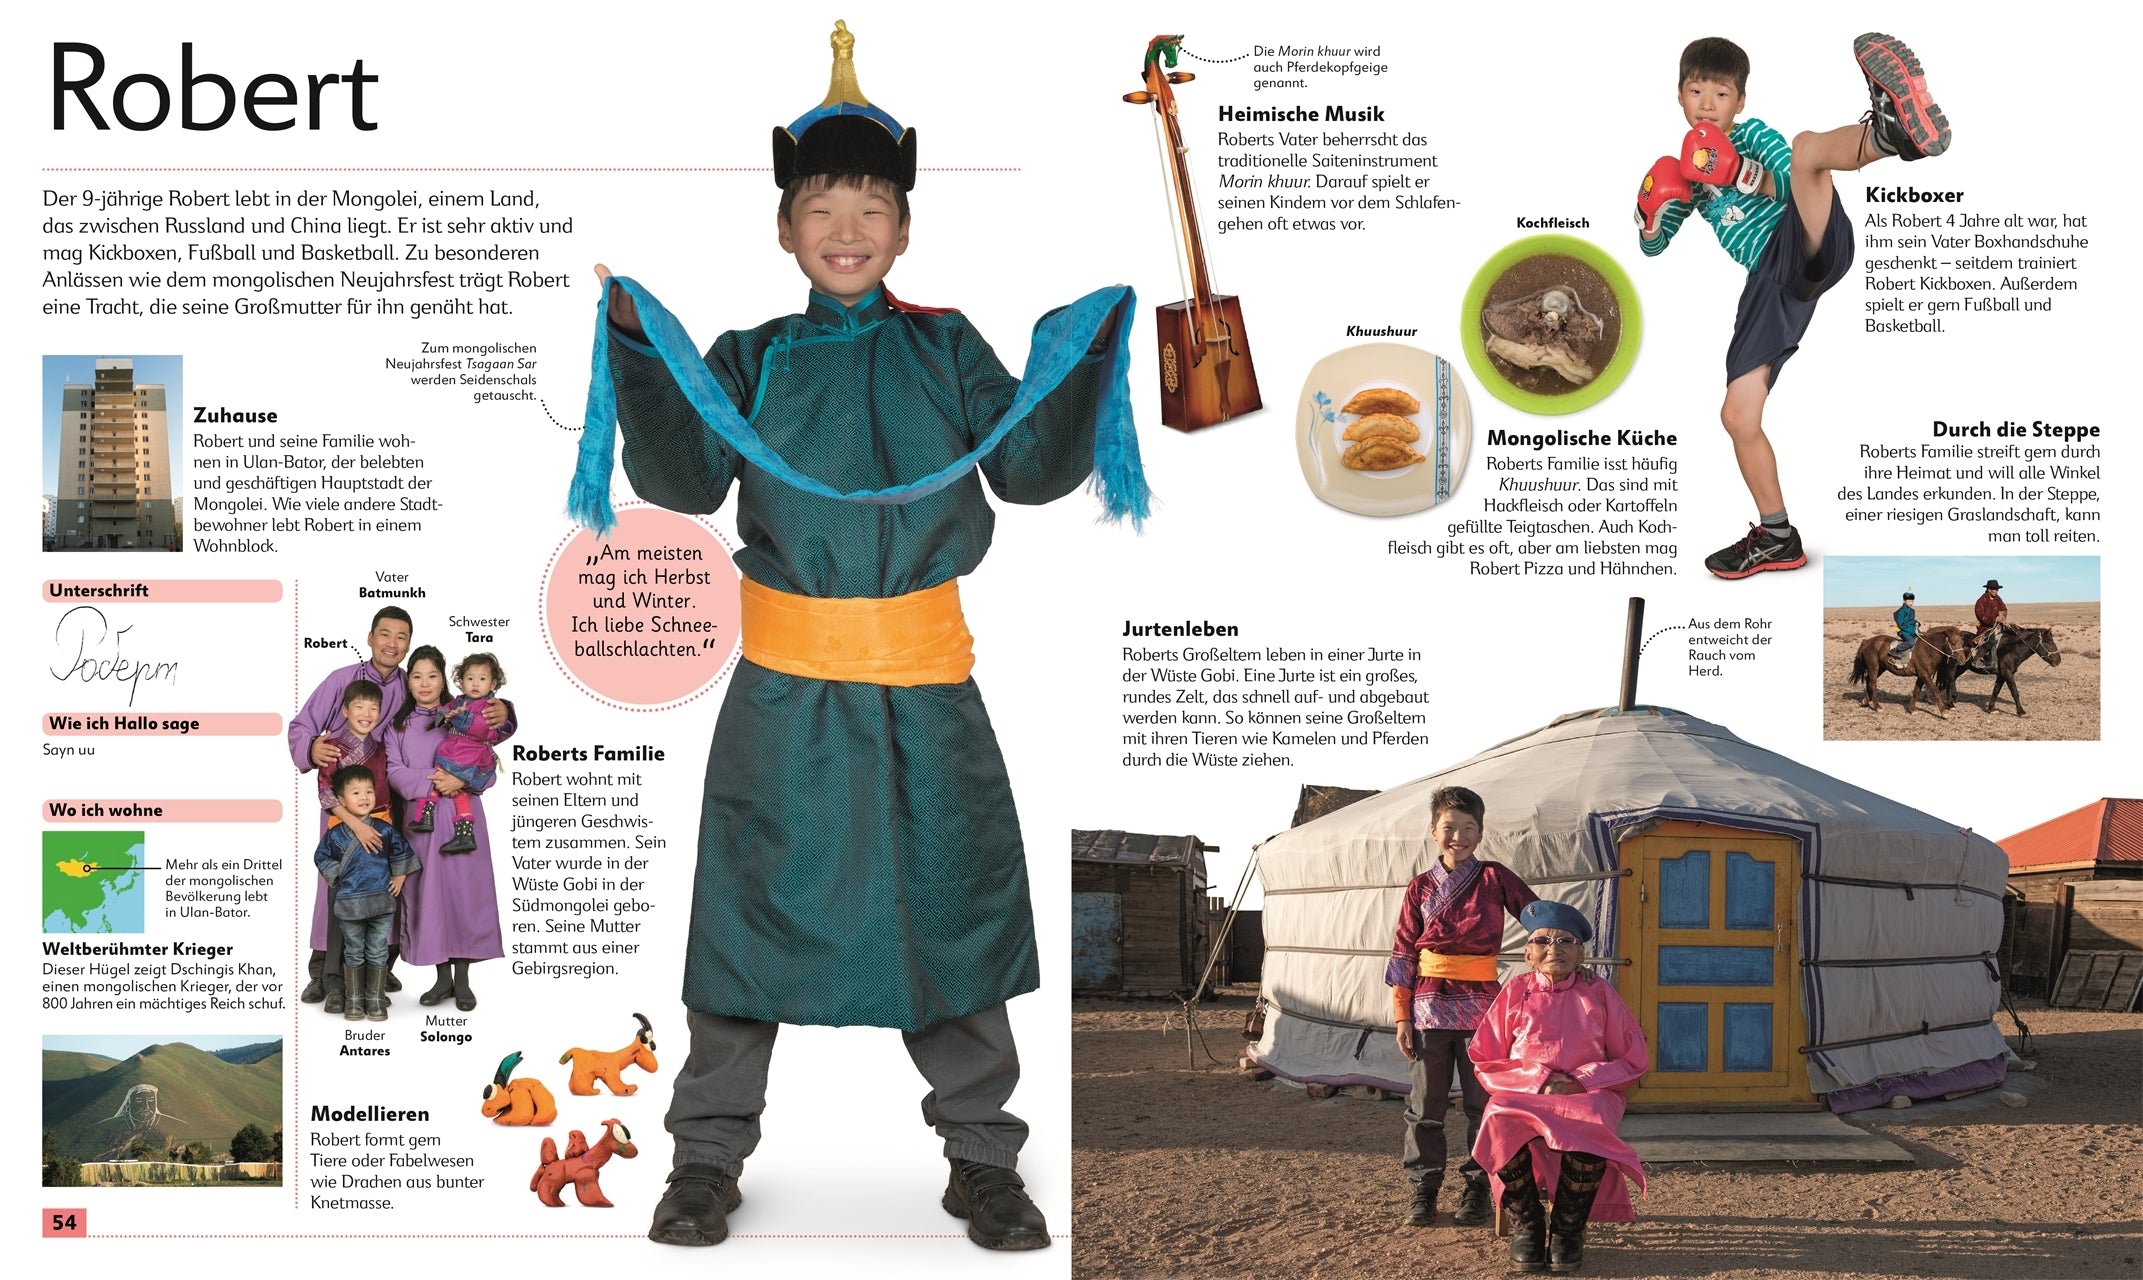 Doppelseite aus dem Kinderfoto Atlas "Kinder aus aller Welt". Die Überschrift lautet Robert und gezeigt wird ein Foto von einem Jungen aus der Mongolei mit traditioneller Kleidung. Außerdem noch weitere kleine Fotos von der Familie, dem Zuhause und dem Alltag von Robert.